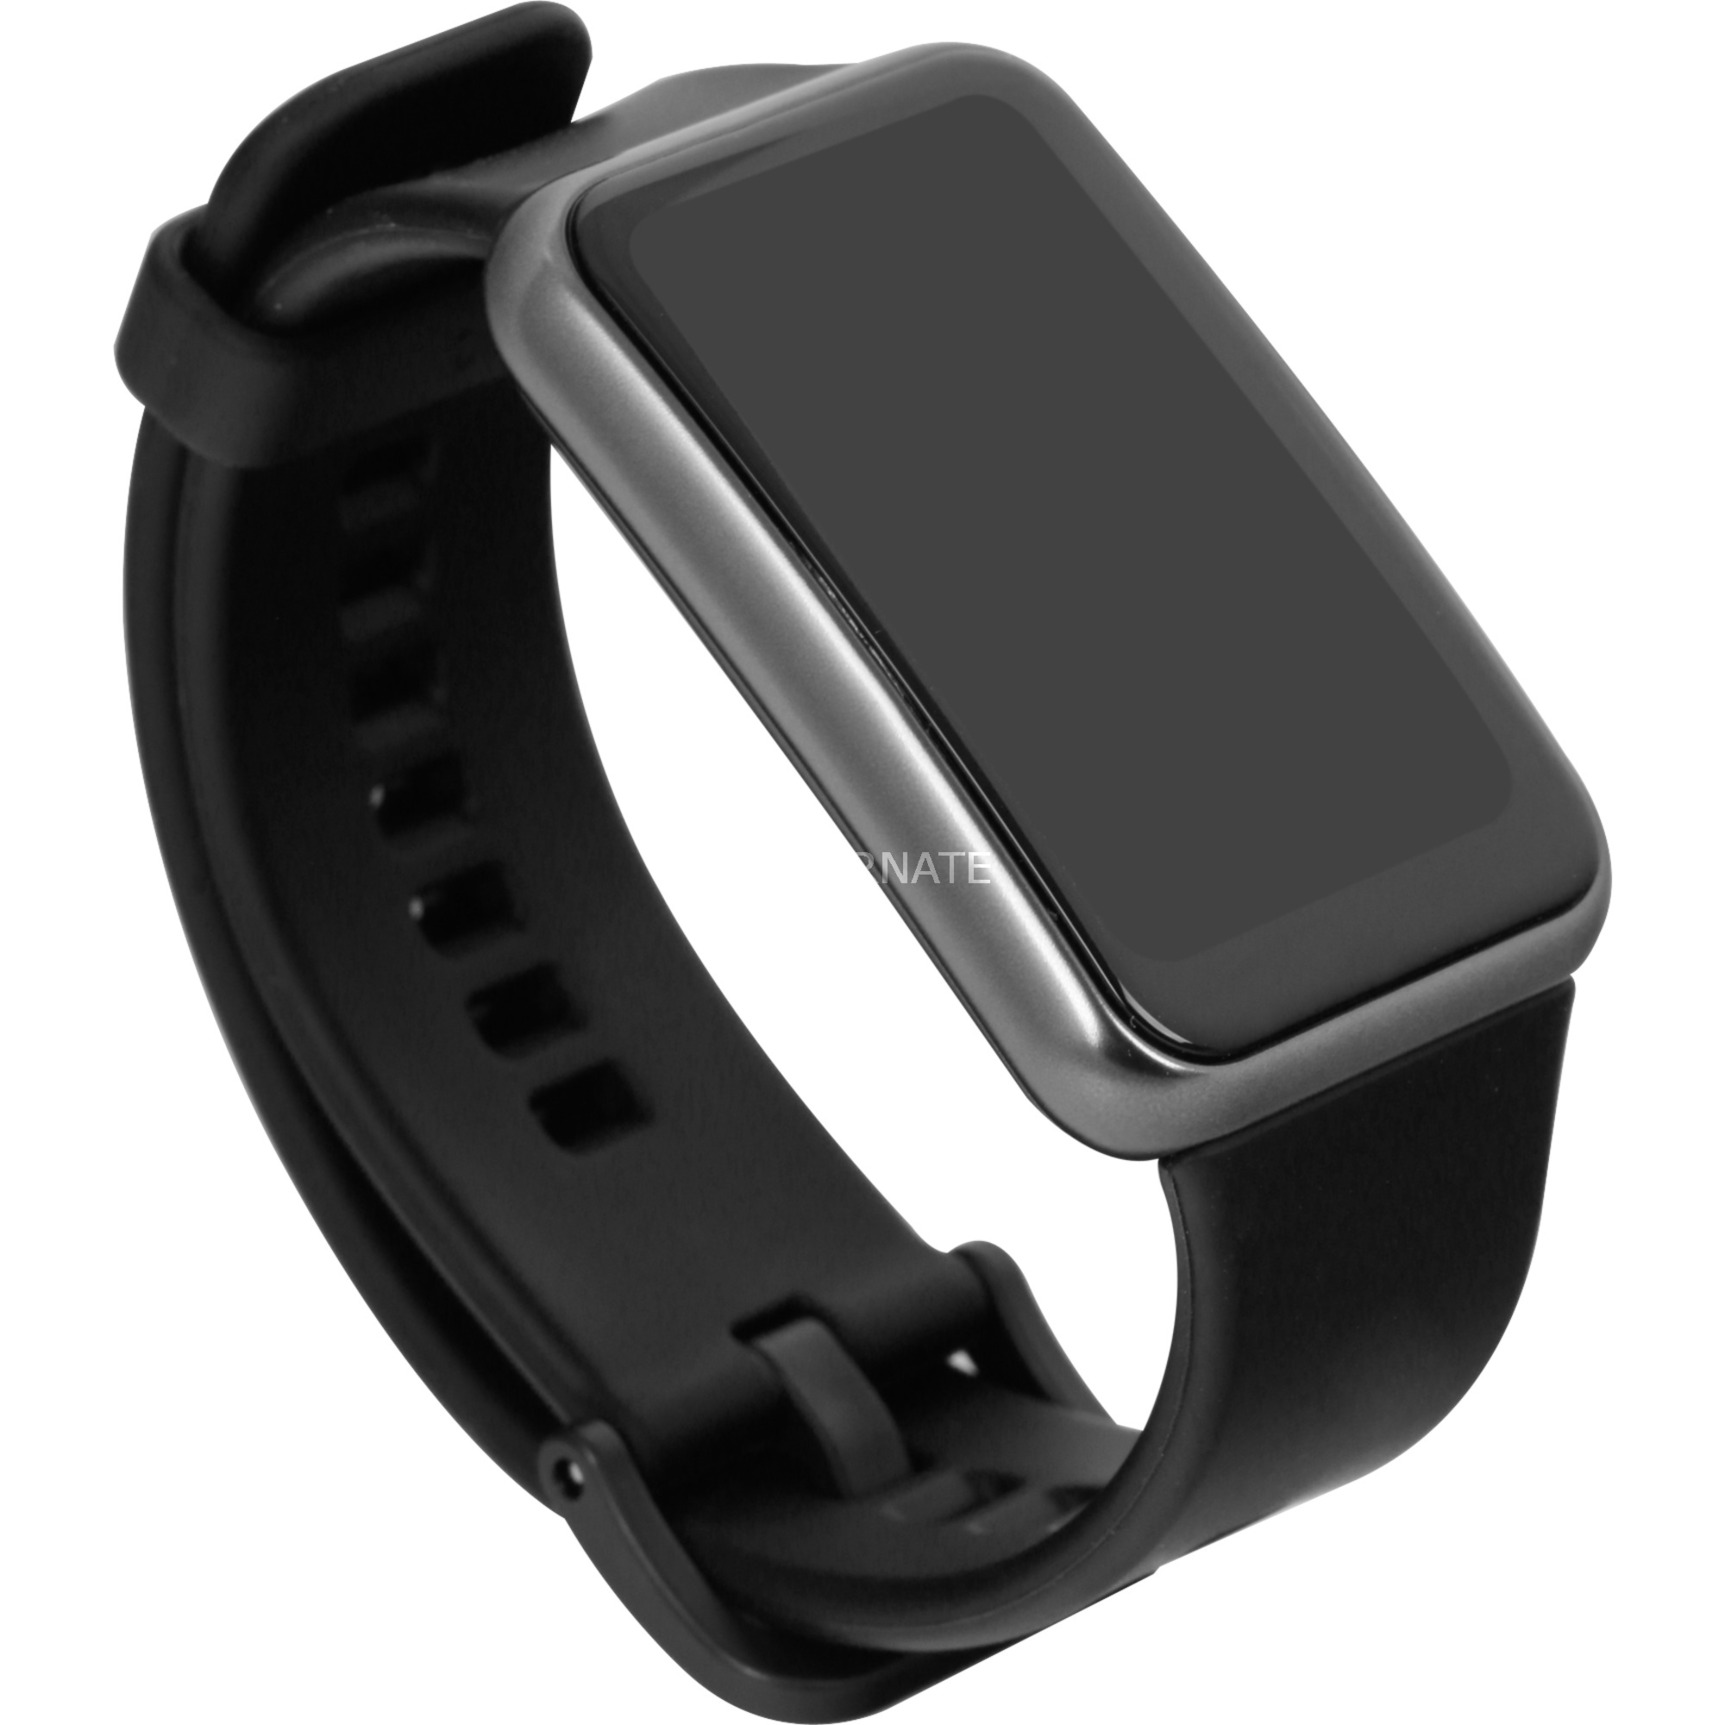 Image of Alternate - Watch FIT New, Smartwatch online einkaufen bei Alternate